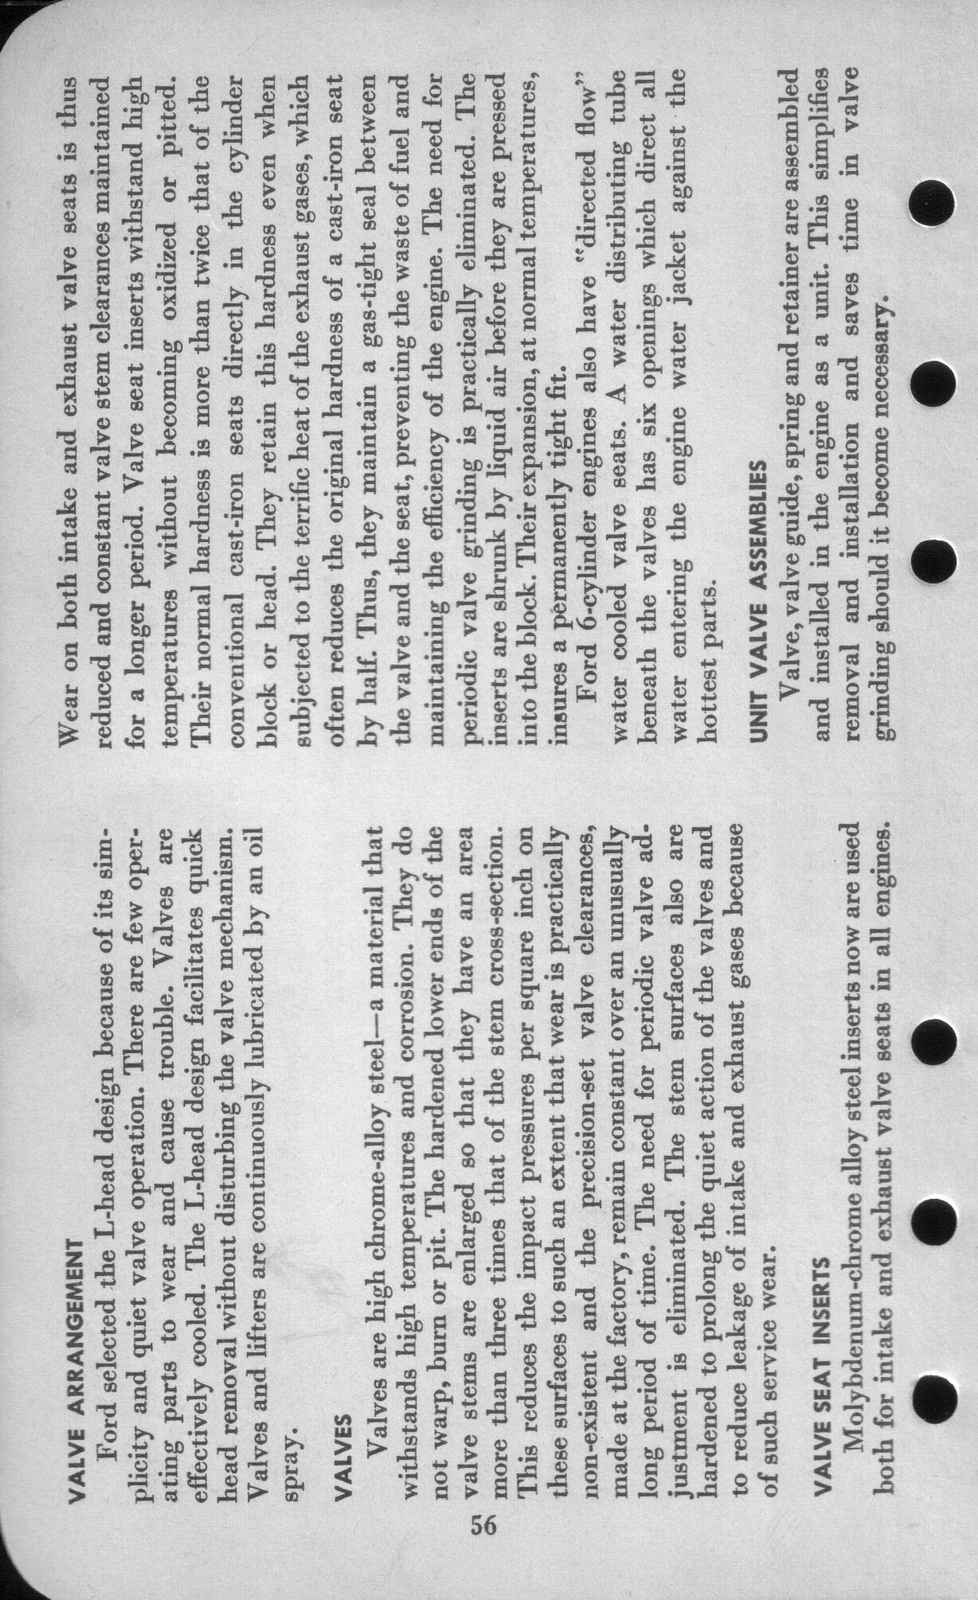 n_1942 Ford Salesmans Reference Manual-056.jpg